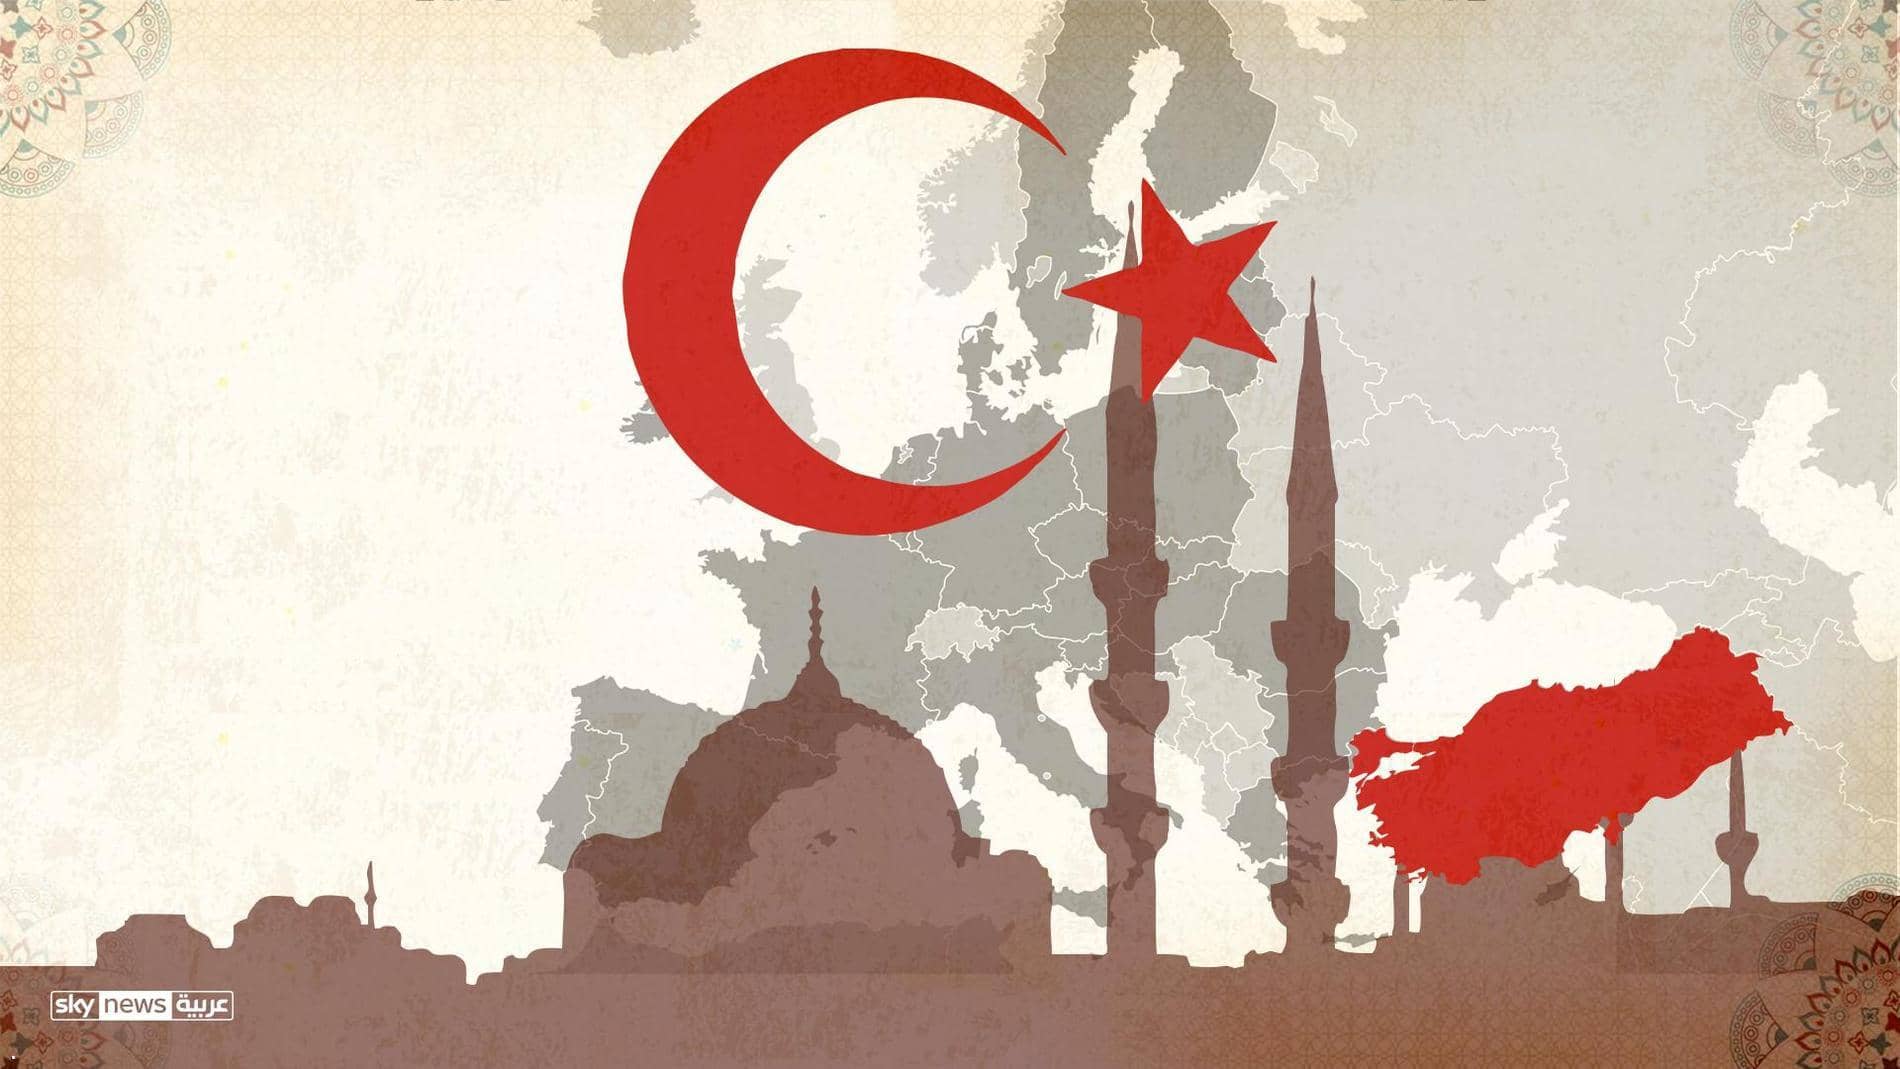 Türk imamları DAİŞ’in ideolojisini Avrupa’da yaygınlaştırdı.